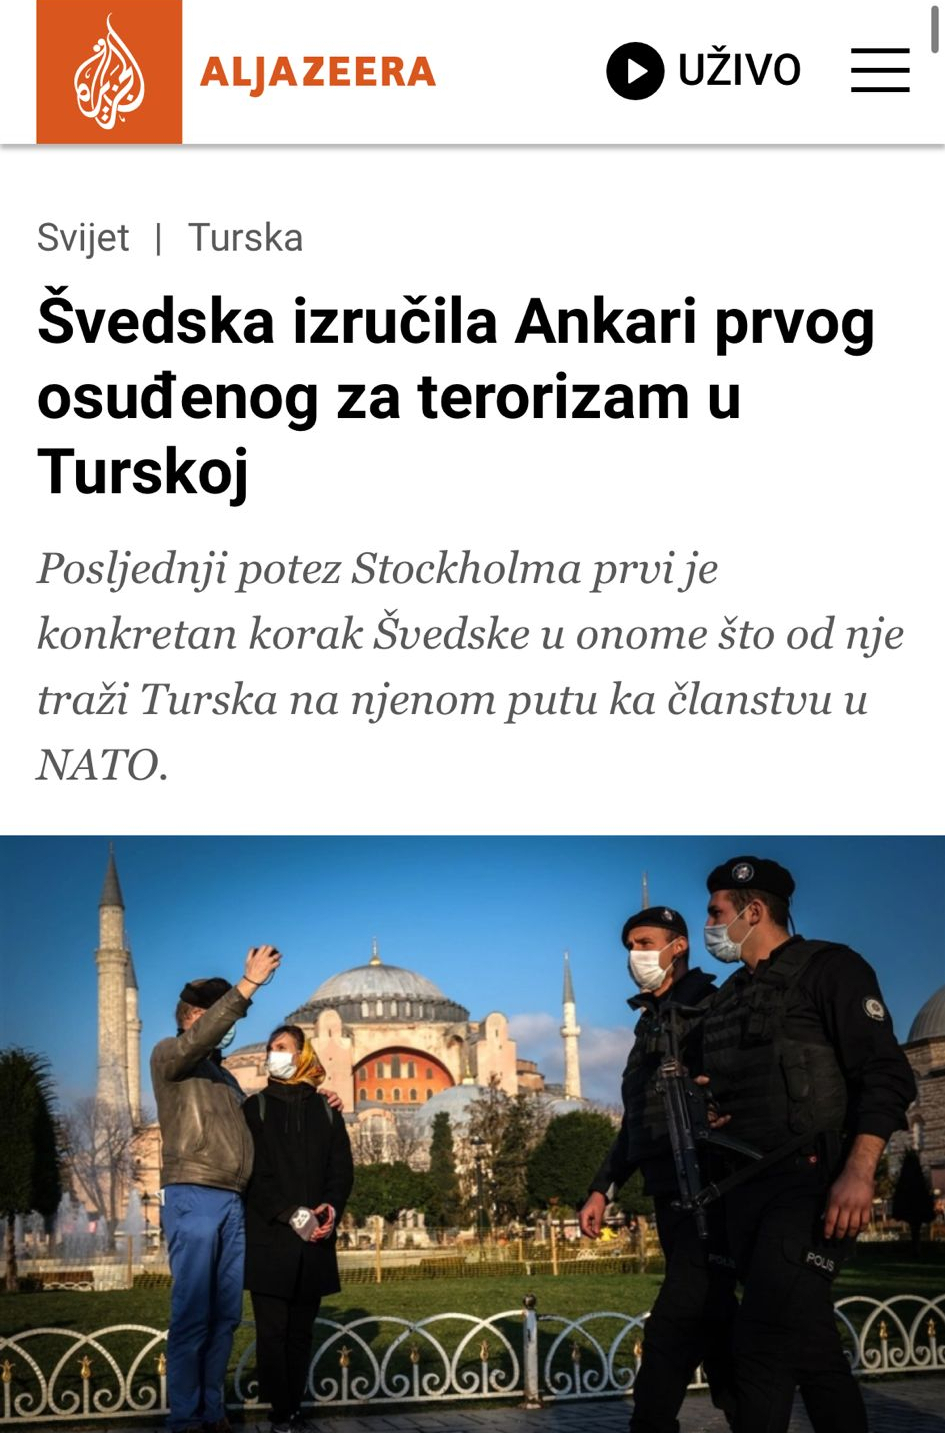 LICEMERJE TAJKUNSKIH MEDIJA Švedsku hvale, a Vučića i Srbiju pljuju sramnim tekstovima zbog iste stvari! (FOTO)